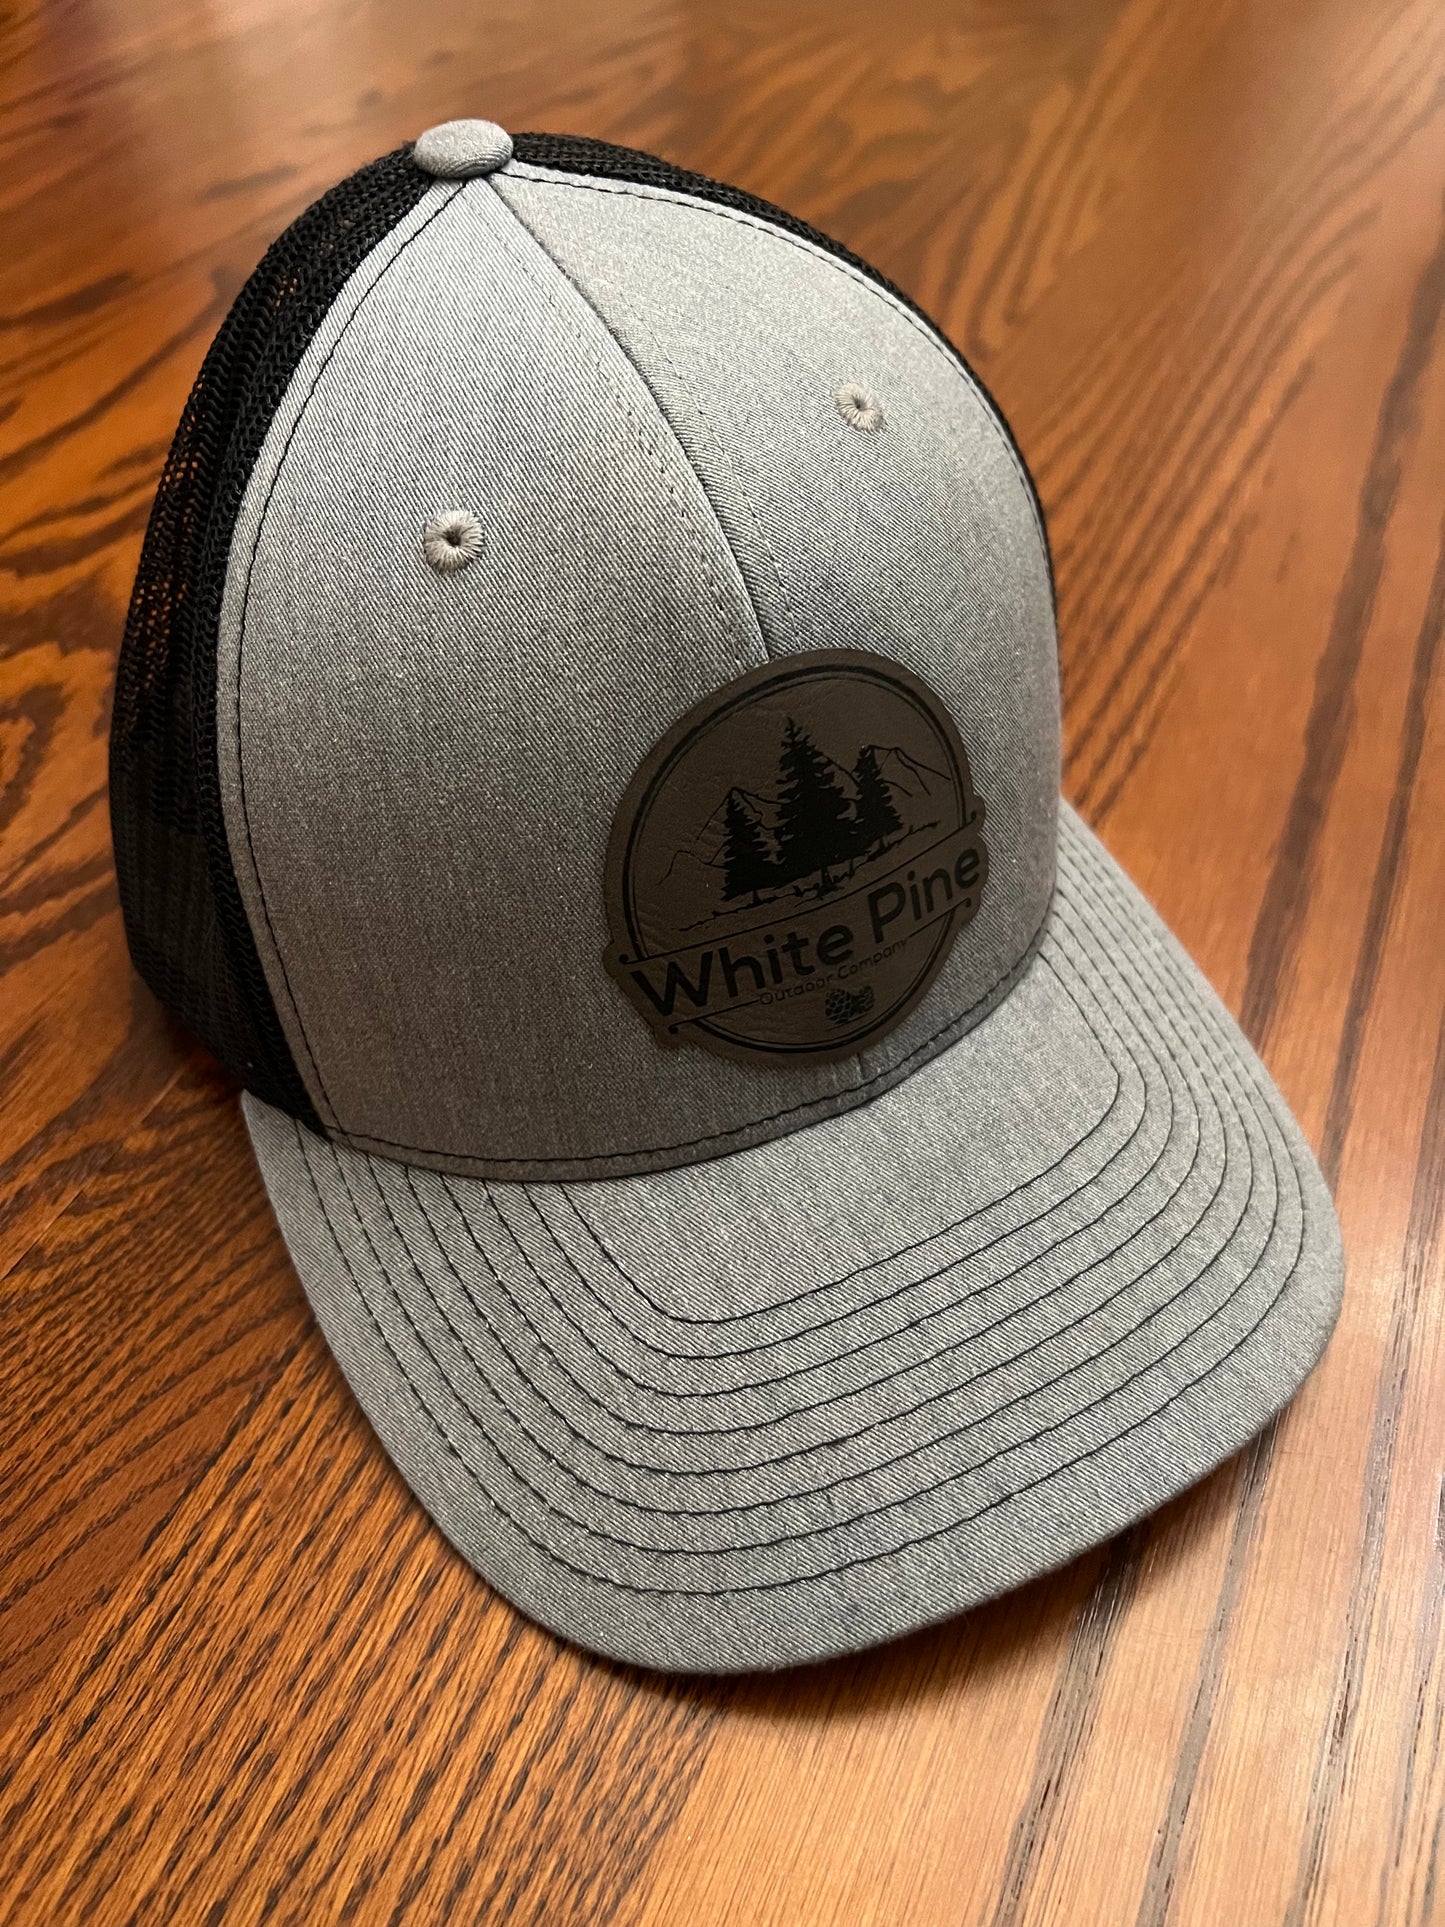 White pine hat